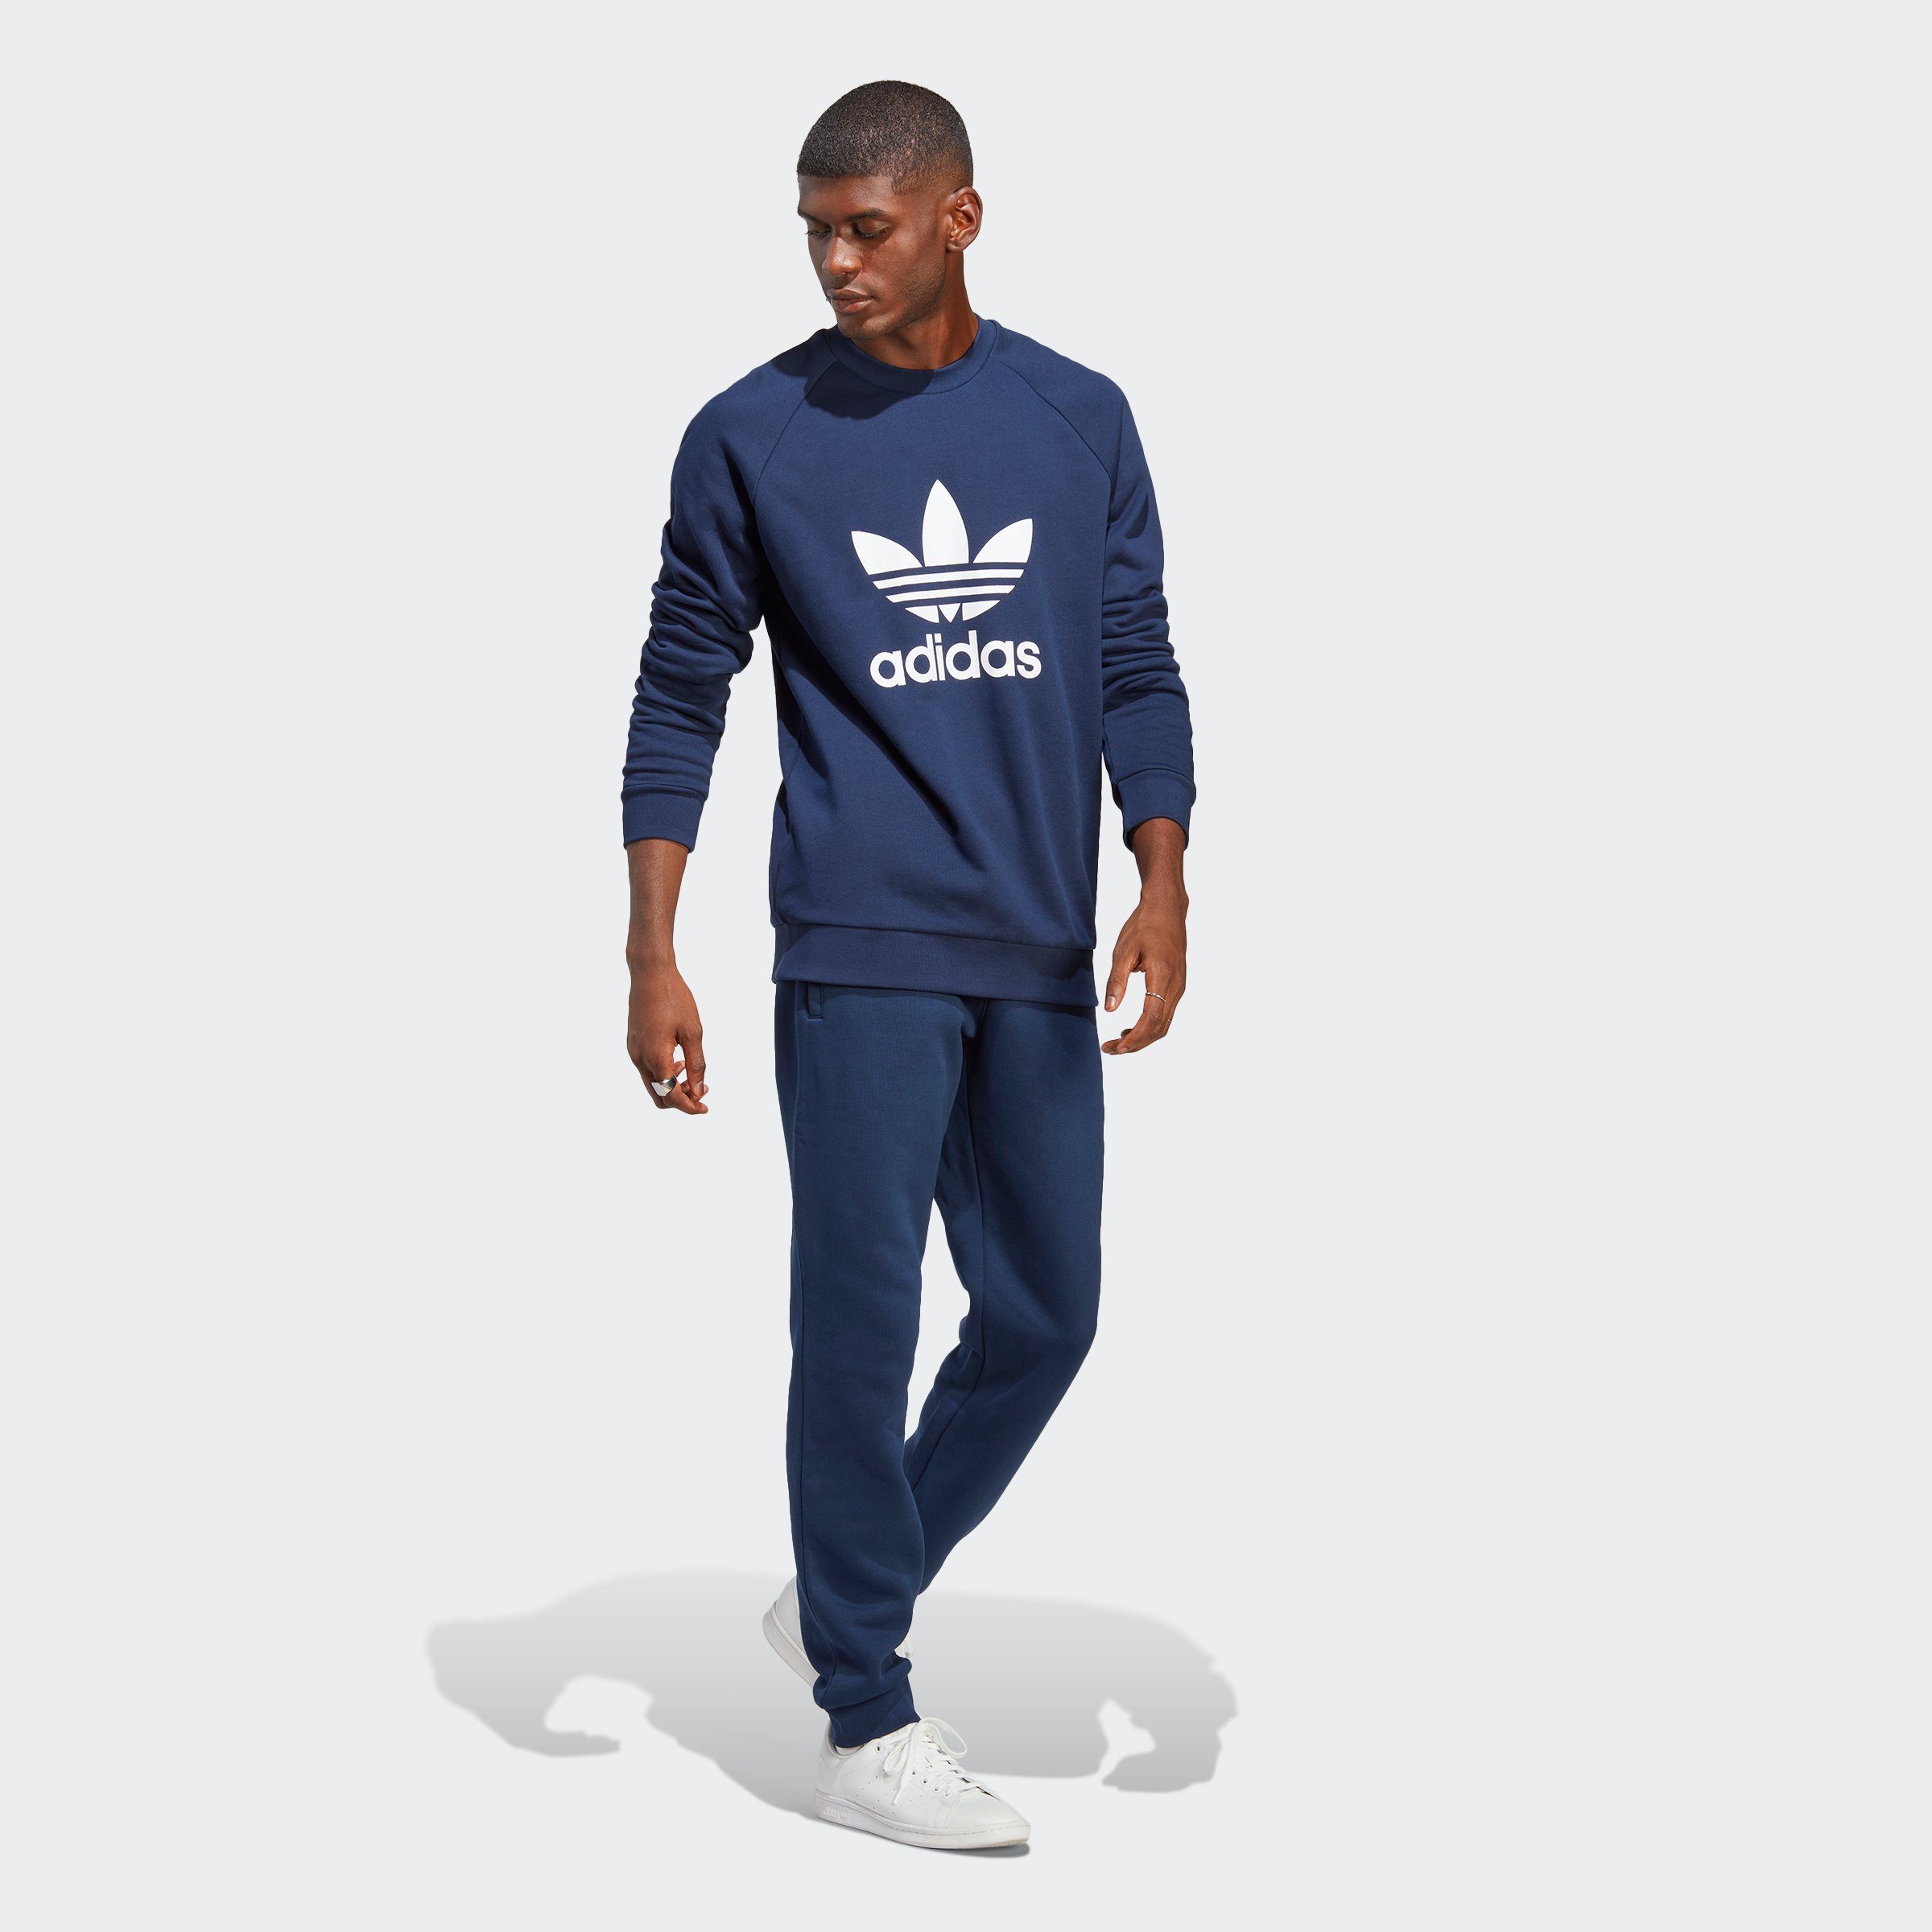 adidas Originals Sweatshirt ADICOLOR CLASSICS Night Indigo TREFOIL